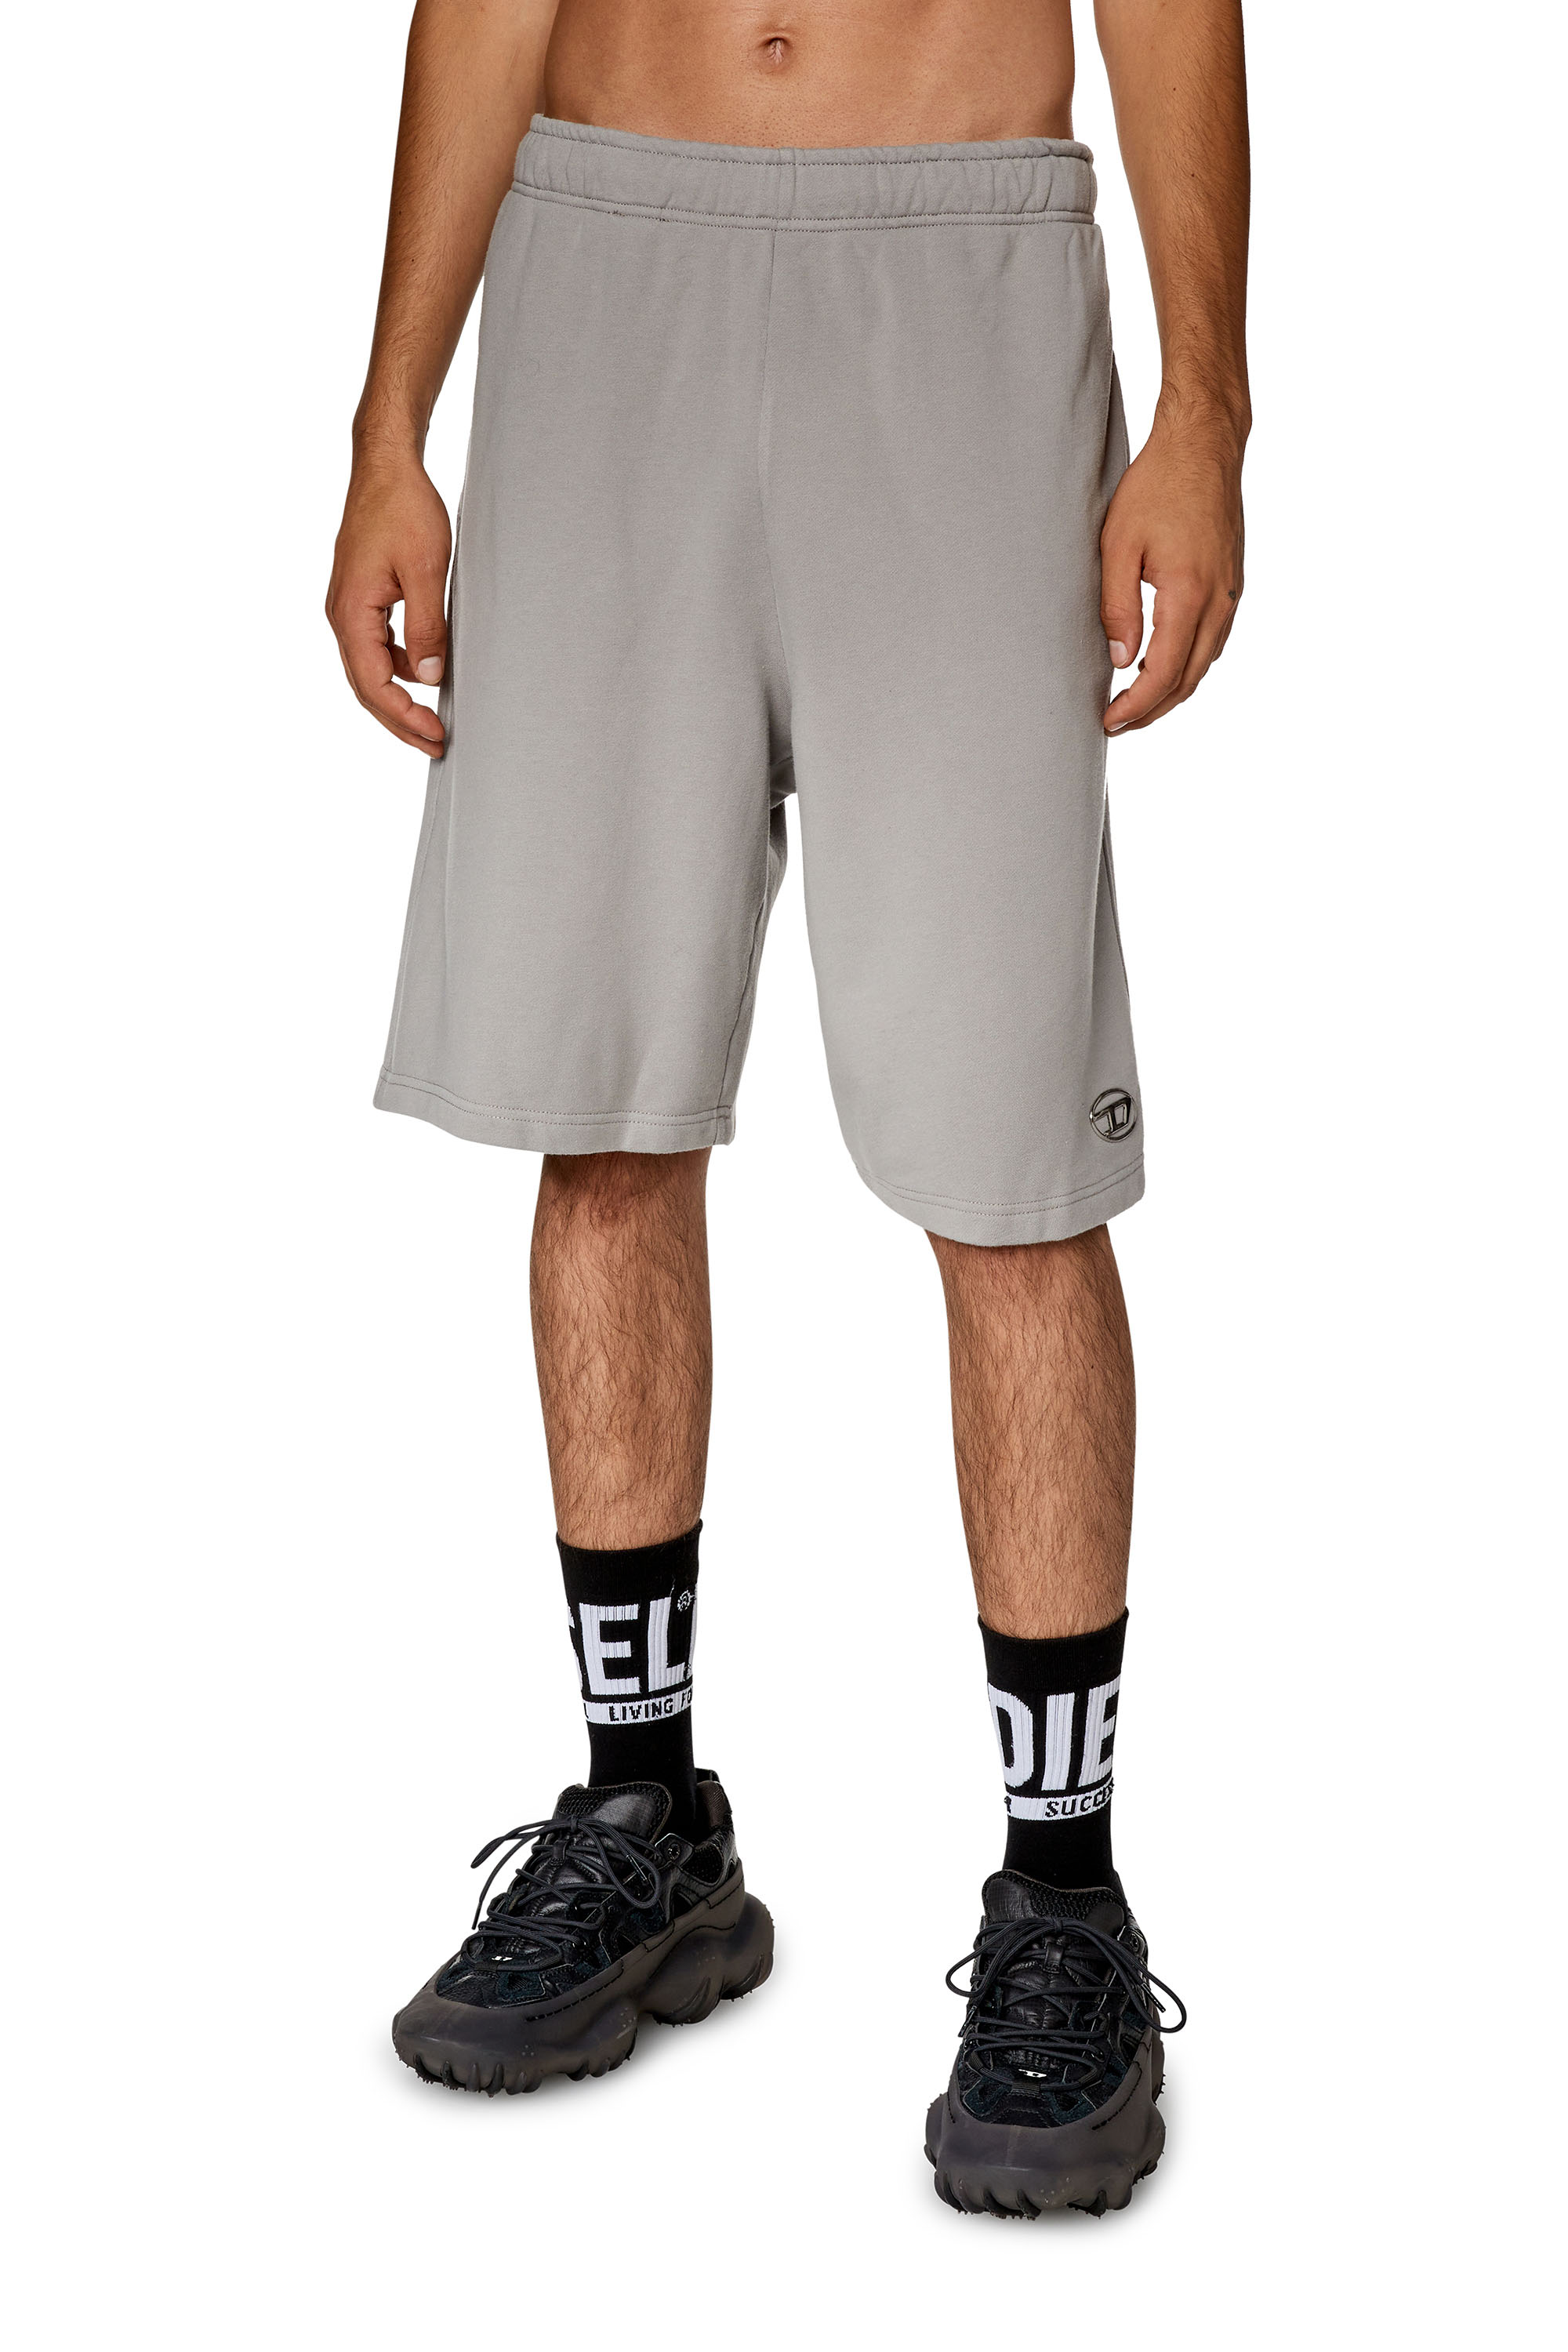 Diesel - Pantalones deportivos cortos con logotipo moldeado por inyección - Shorts - Hombre - Gris